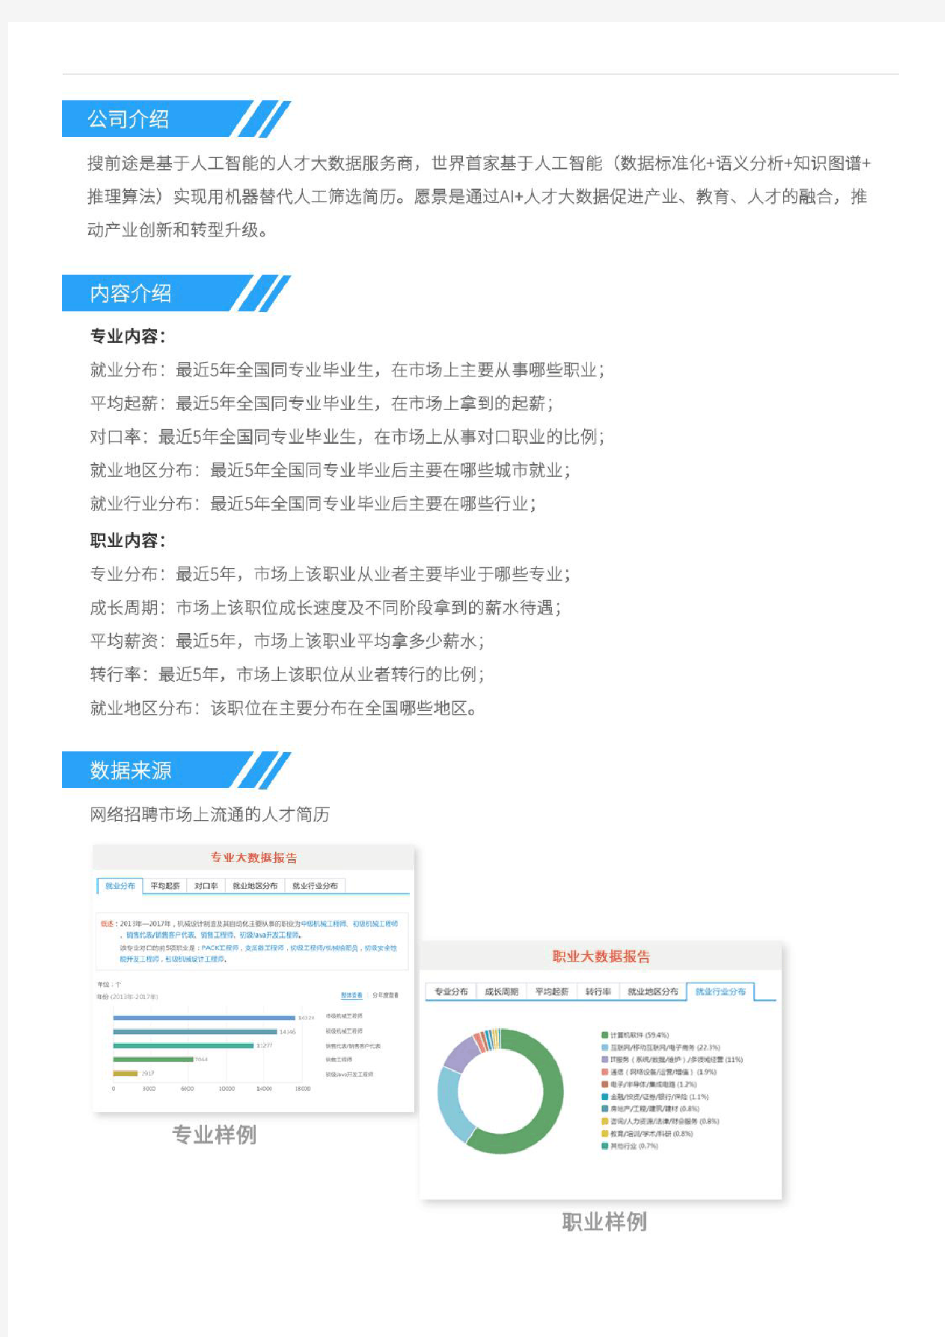 2013-2017年华东师范大学计算机科学与技术专业毕业生就业大数据报告